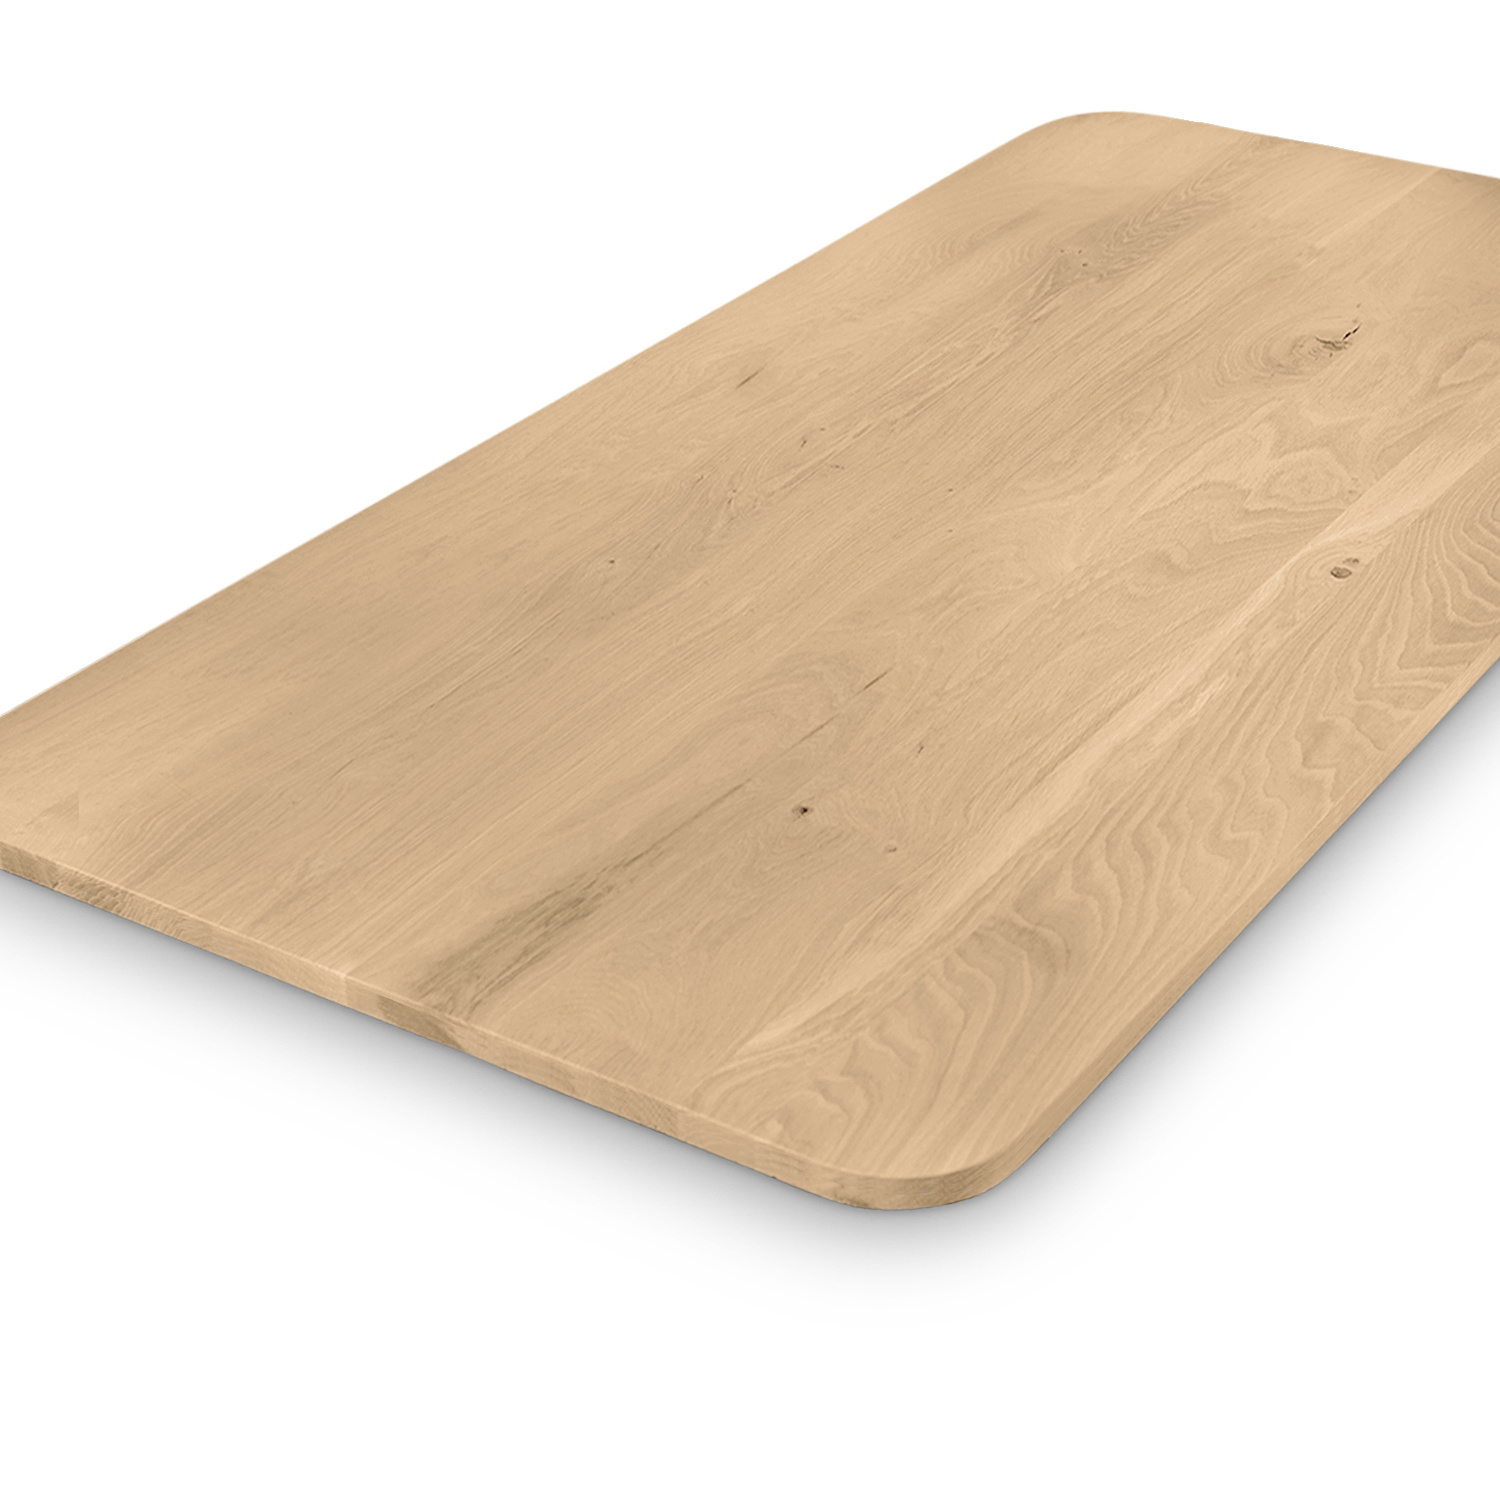  Tischplatte Eiche - mit runden Ecken - nach Maß - 2,7 cm dick (1-Schicht) - Breite Lamellen (10 - 12 cm breit) - Eichenholz rustikal - verleimt & künstlich getrocknet (HF 8-12%) - mit abgerundeten Kanten - 50-120x50-248 cm